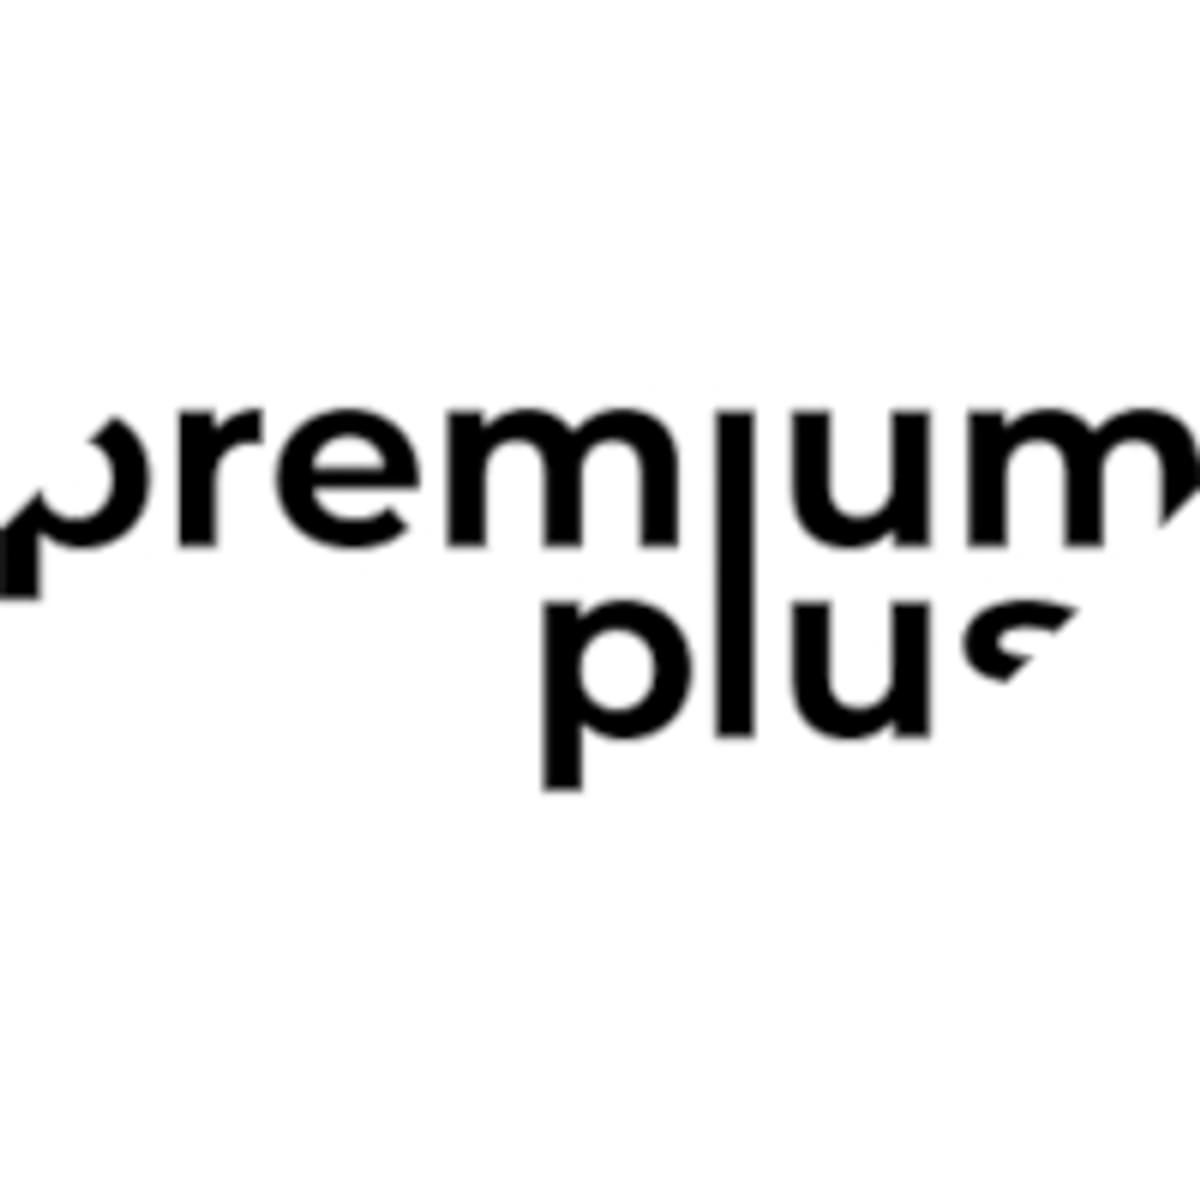 Premium Plus opent een kantoor in Amsterdam image